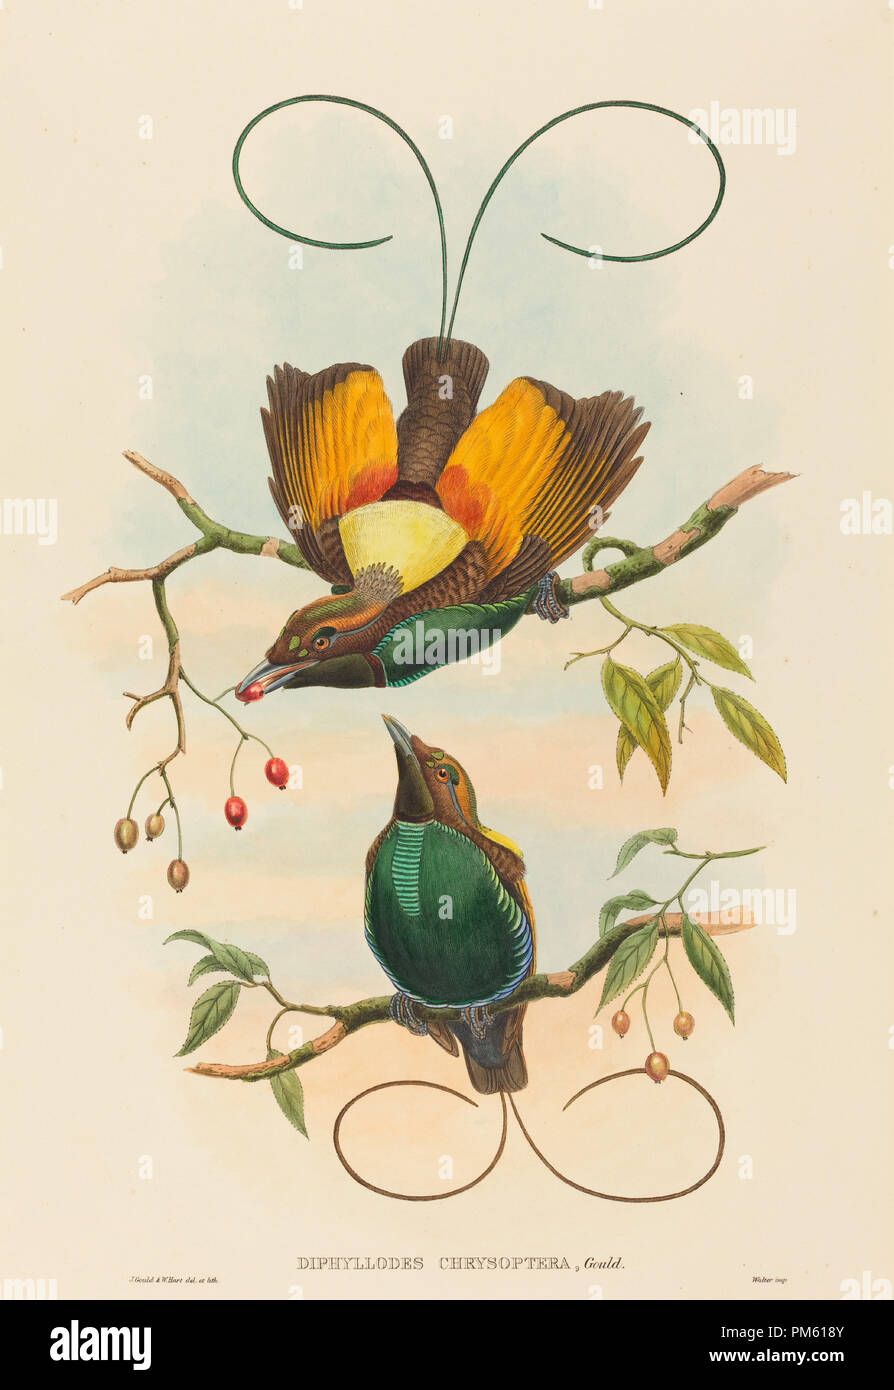 Diphyllodes chrysoptera (magnifique oiseau de paradis). Technique : lithographie colorée à la main. Musée : National Gallery of Art, Washington DC. Auteur : John Gould et W. Hart. Banque D'Images